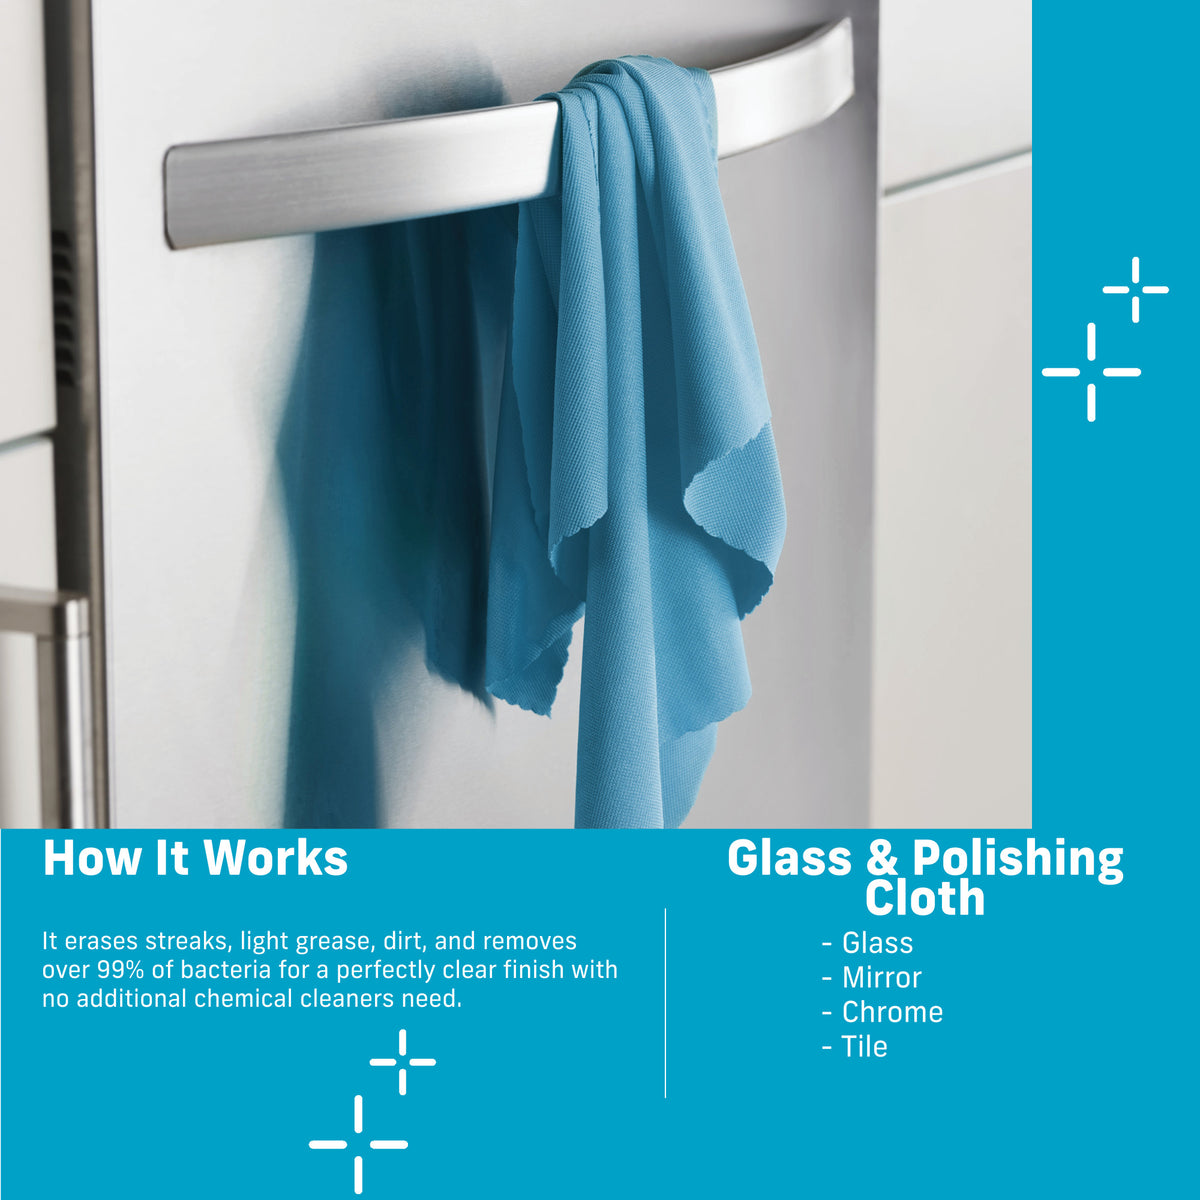 Glass and Polishing Cloth